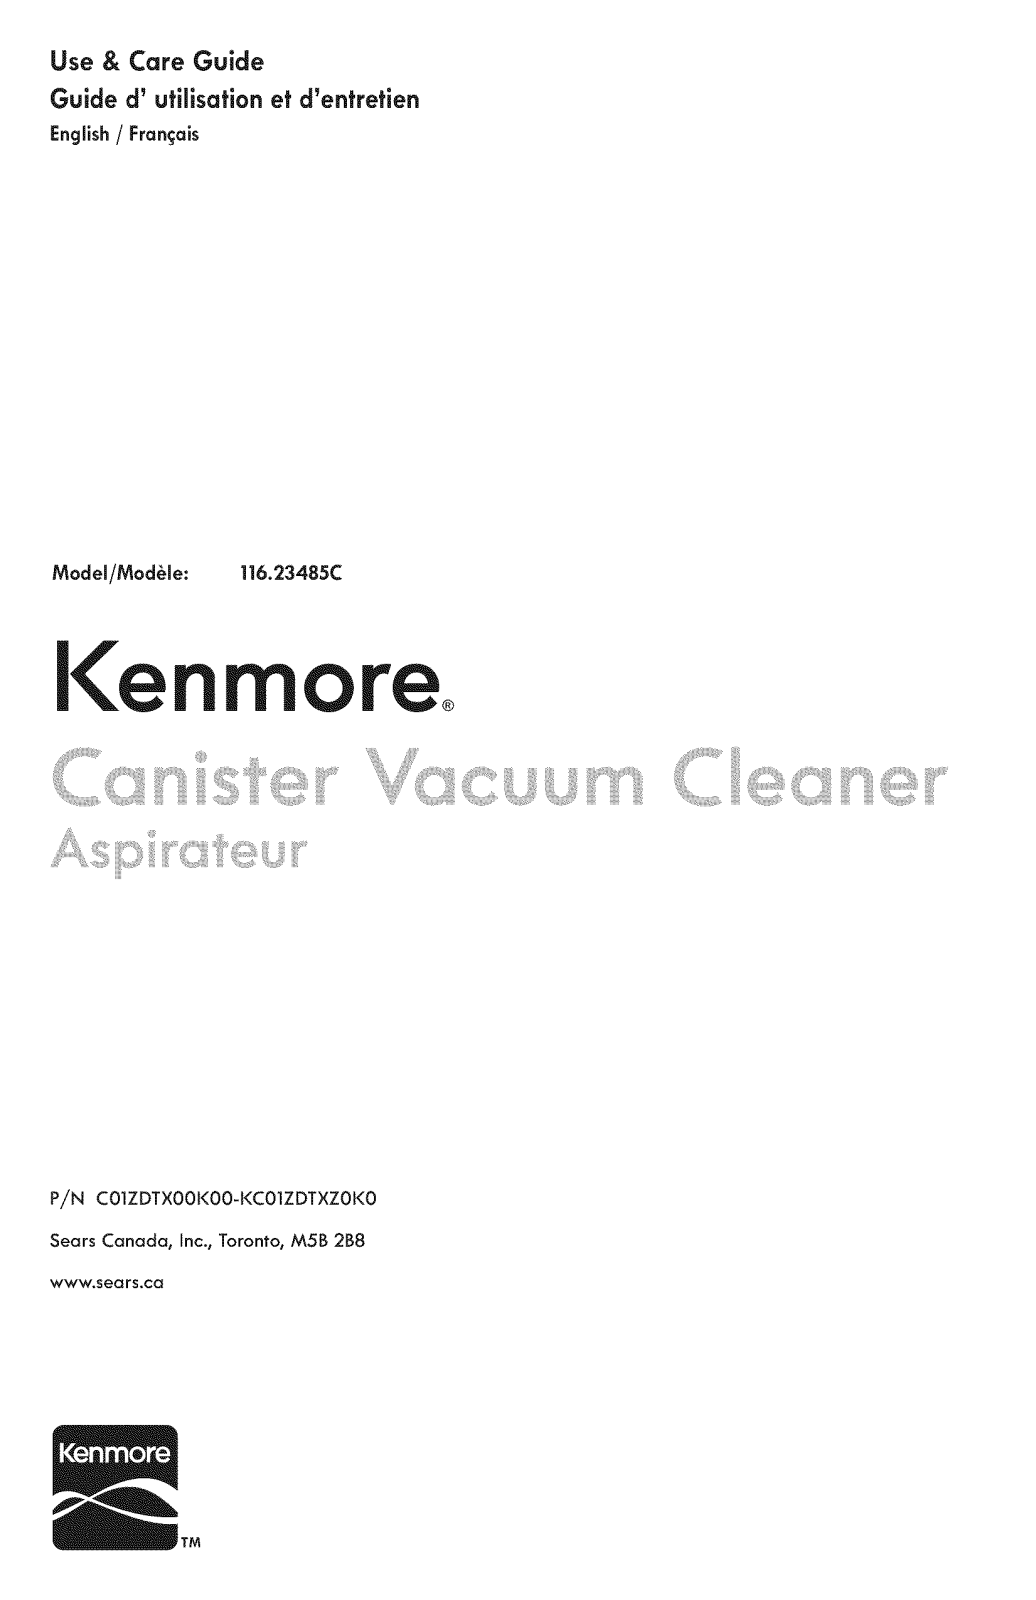 Kenmore 11653485111C, 11623485111C Owner’s Manual